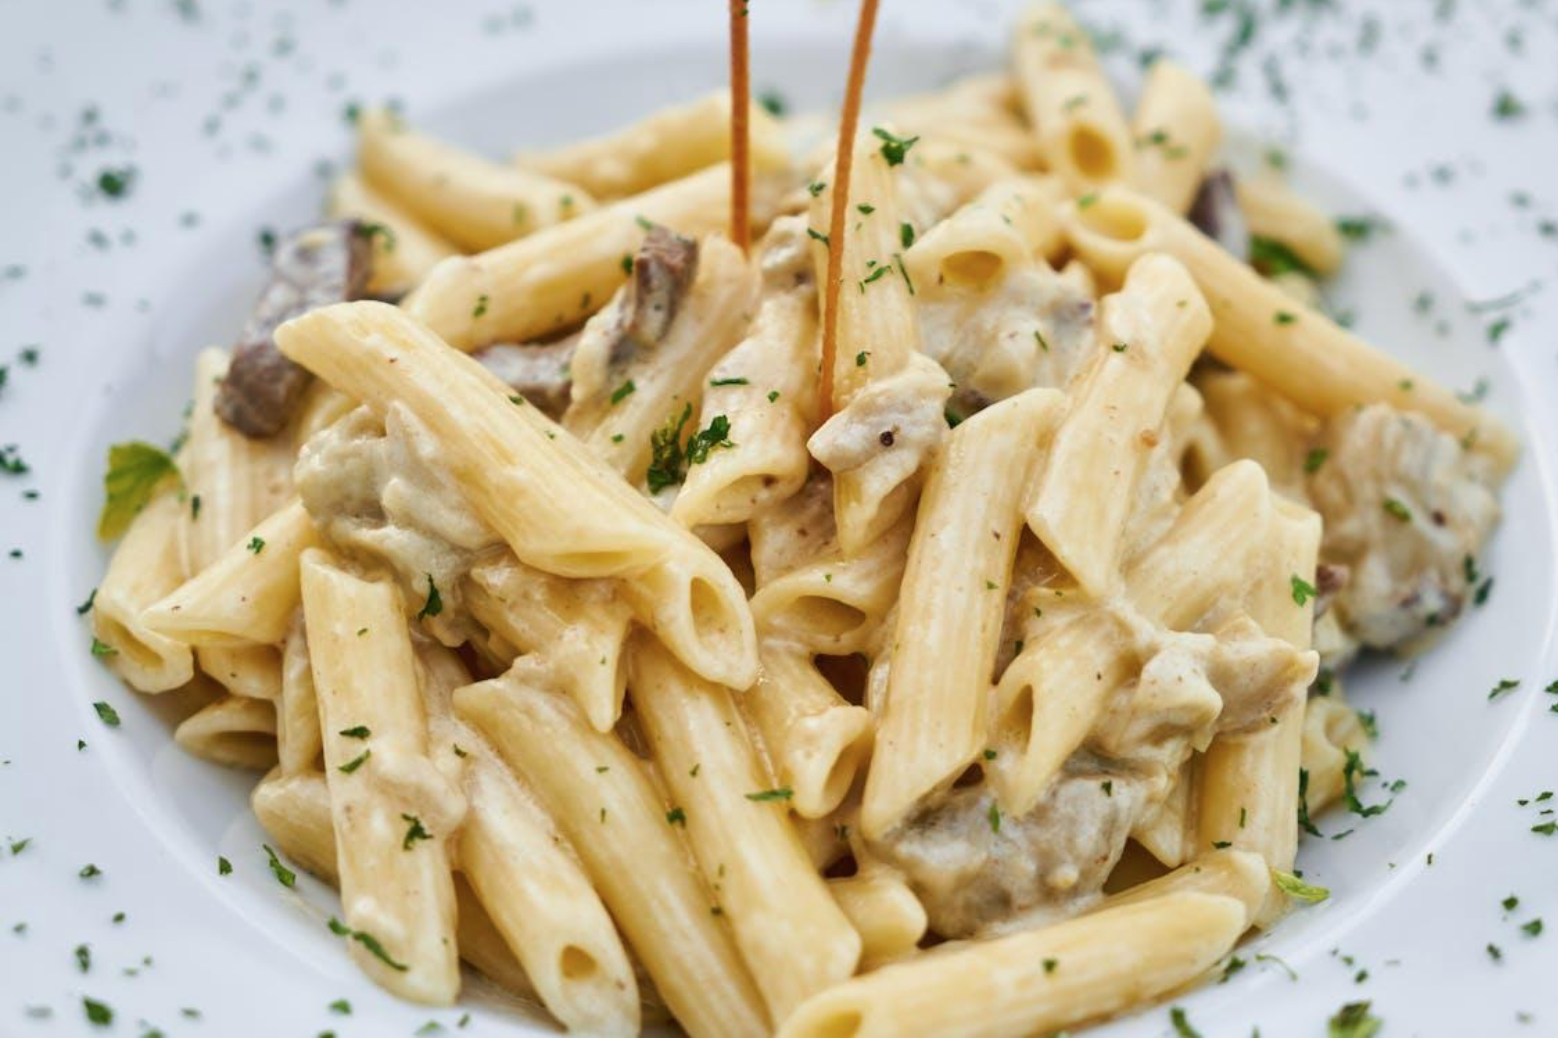 Deliciously creamy and surprisingly nutritious mushroom pasta